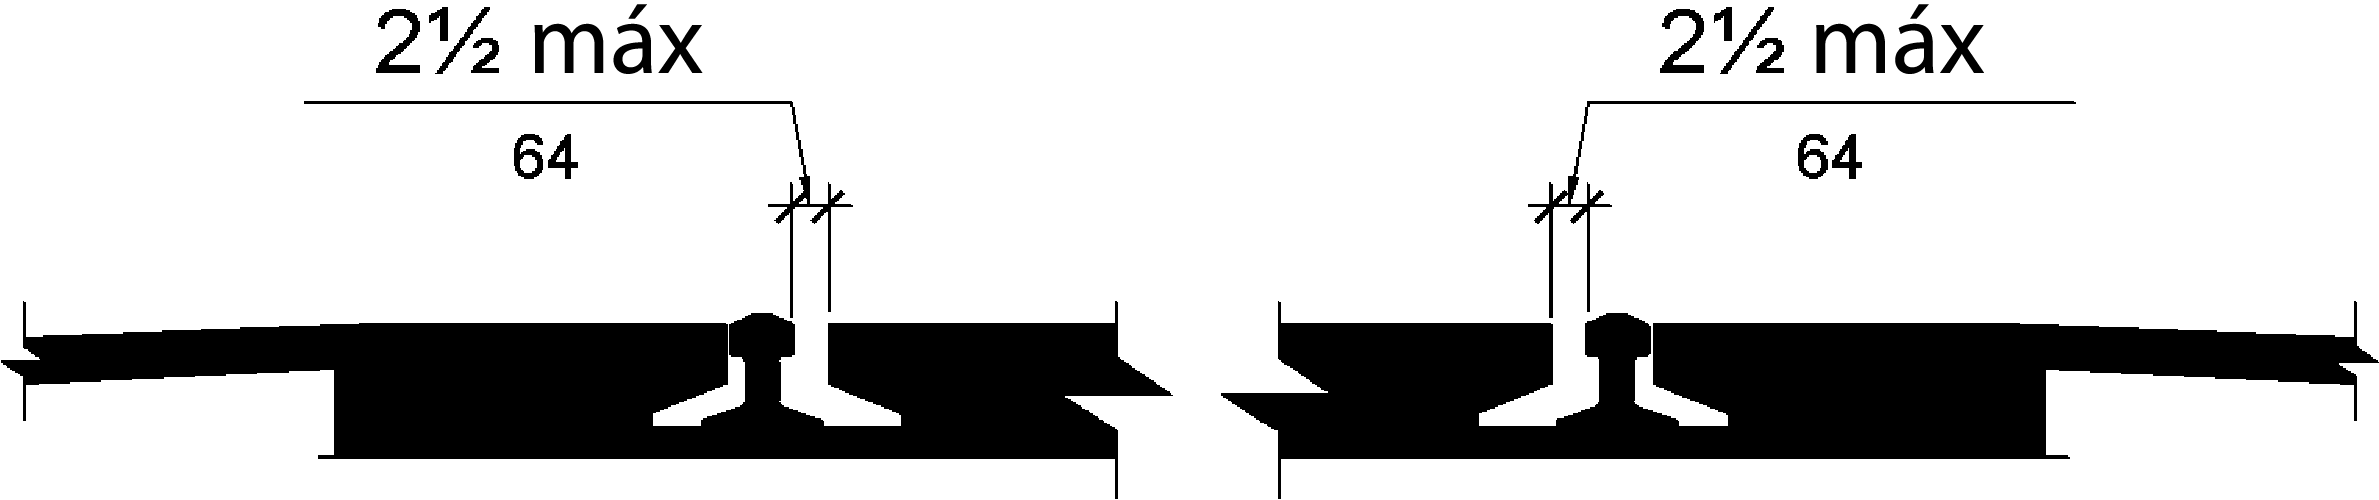 Se muestra una sección transversal de un par de rieles de tren con superficies de pasarela que colindan con los rieles en el exterior del par.  La superficie entre los rieles está al mismo nivel que las superficies exteriores, pero se muestra un espacio horizontal de 21/2 pulgadas (64 mm) como máximo en el borde interior de cada riel para acomodar una brida de rueda de tren.